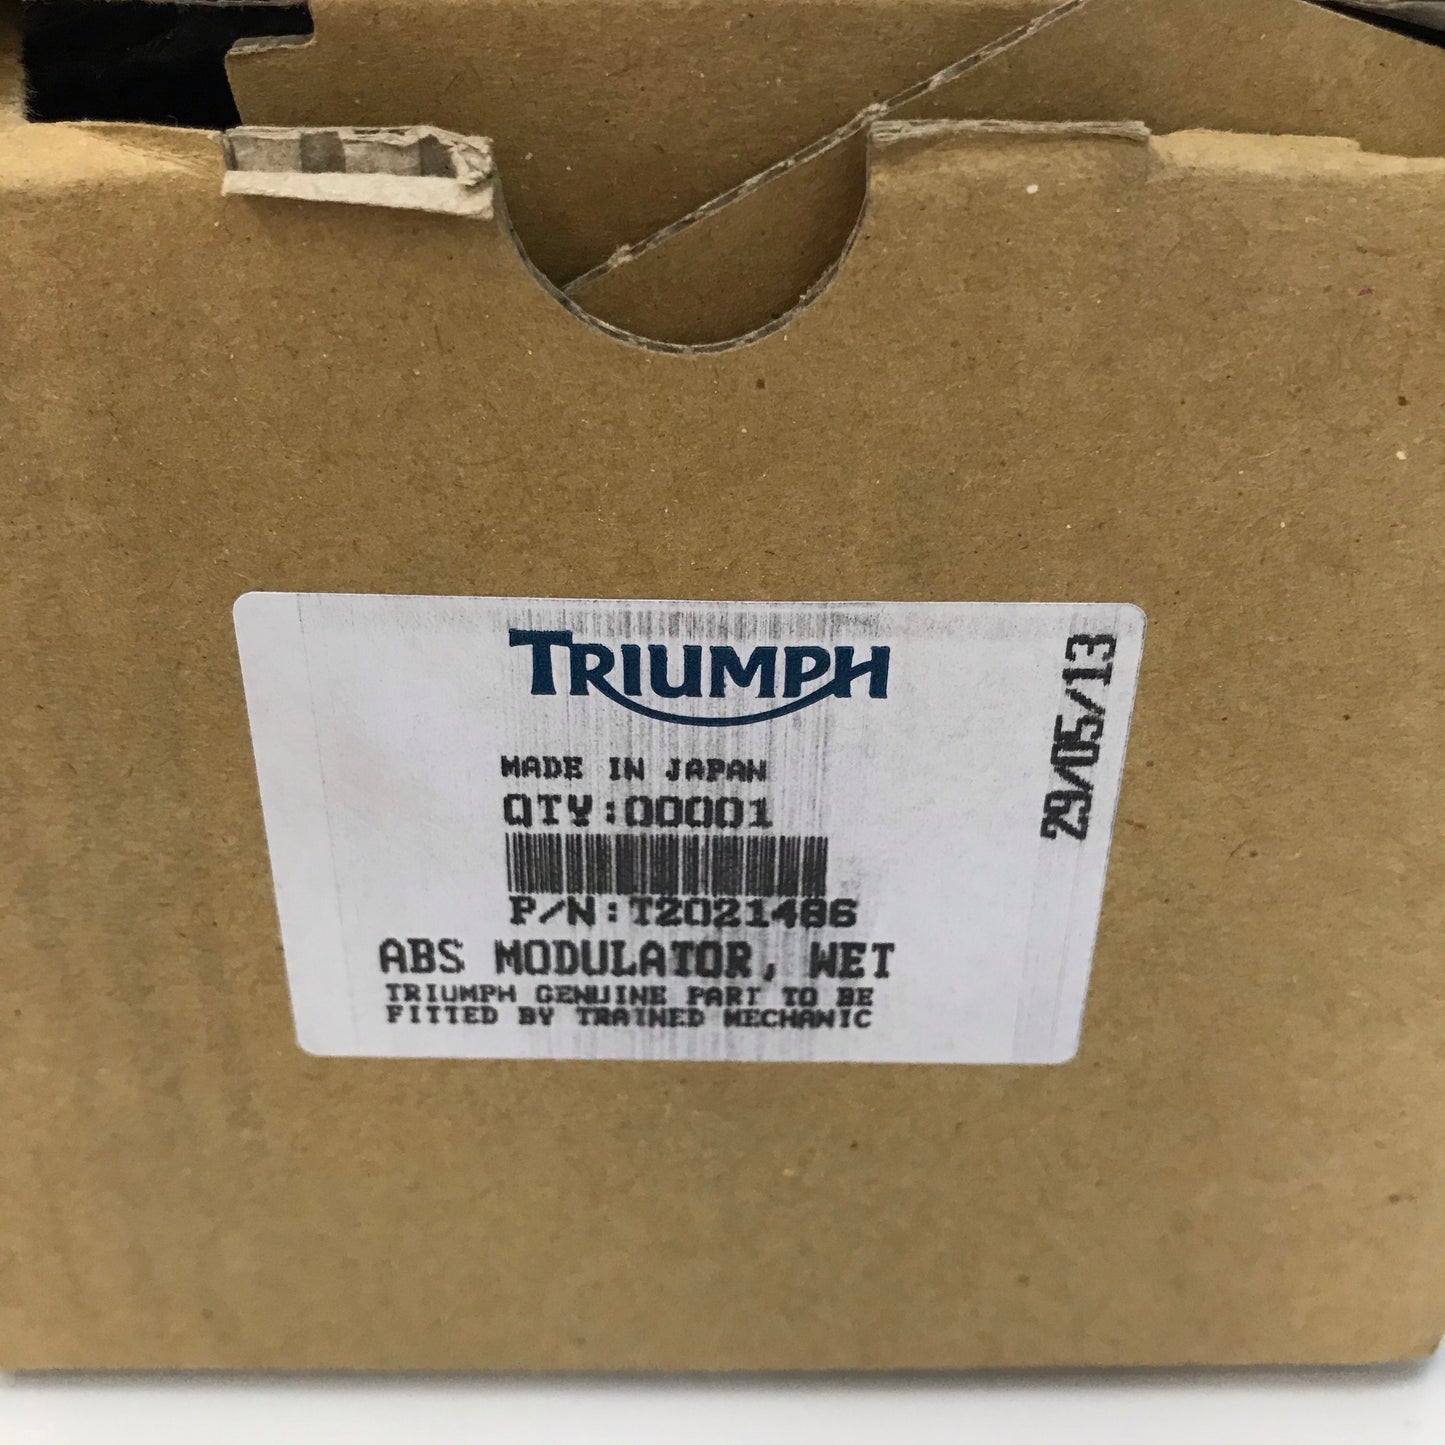 Triumph ABS Modular, Wet T2021486